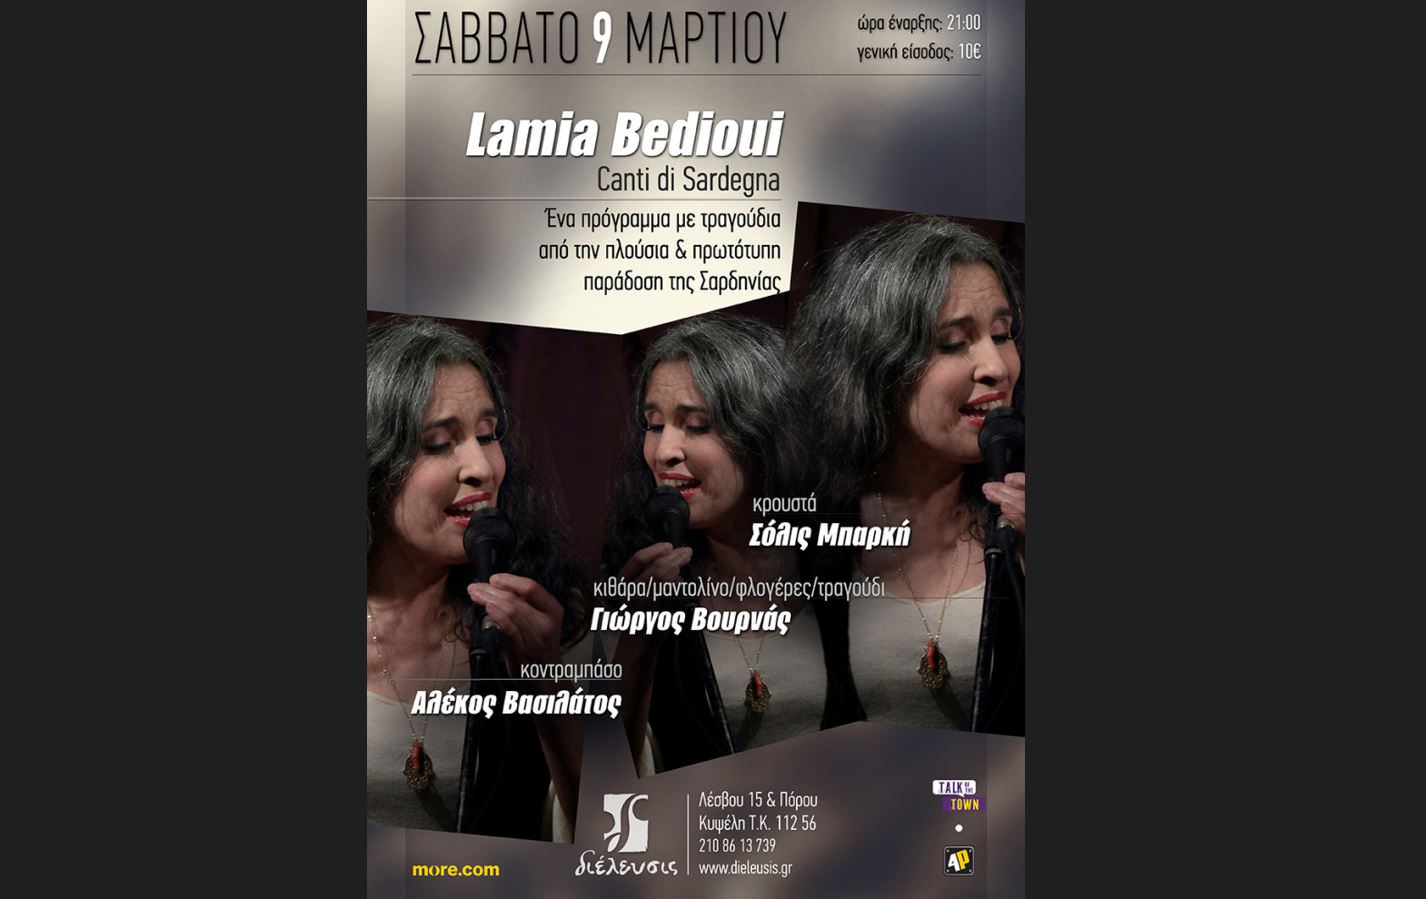 Η Lamia Bedioui στον Πολυχώρο Διέλευσις με τραγούδια από τη Σαρδηνία το Σάββατο 9 Μαρτίου